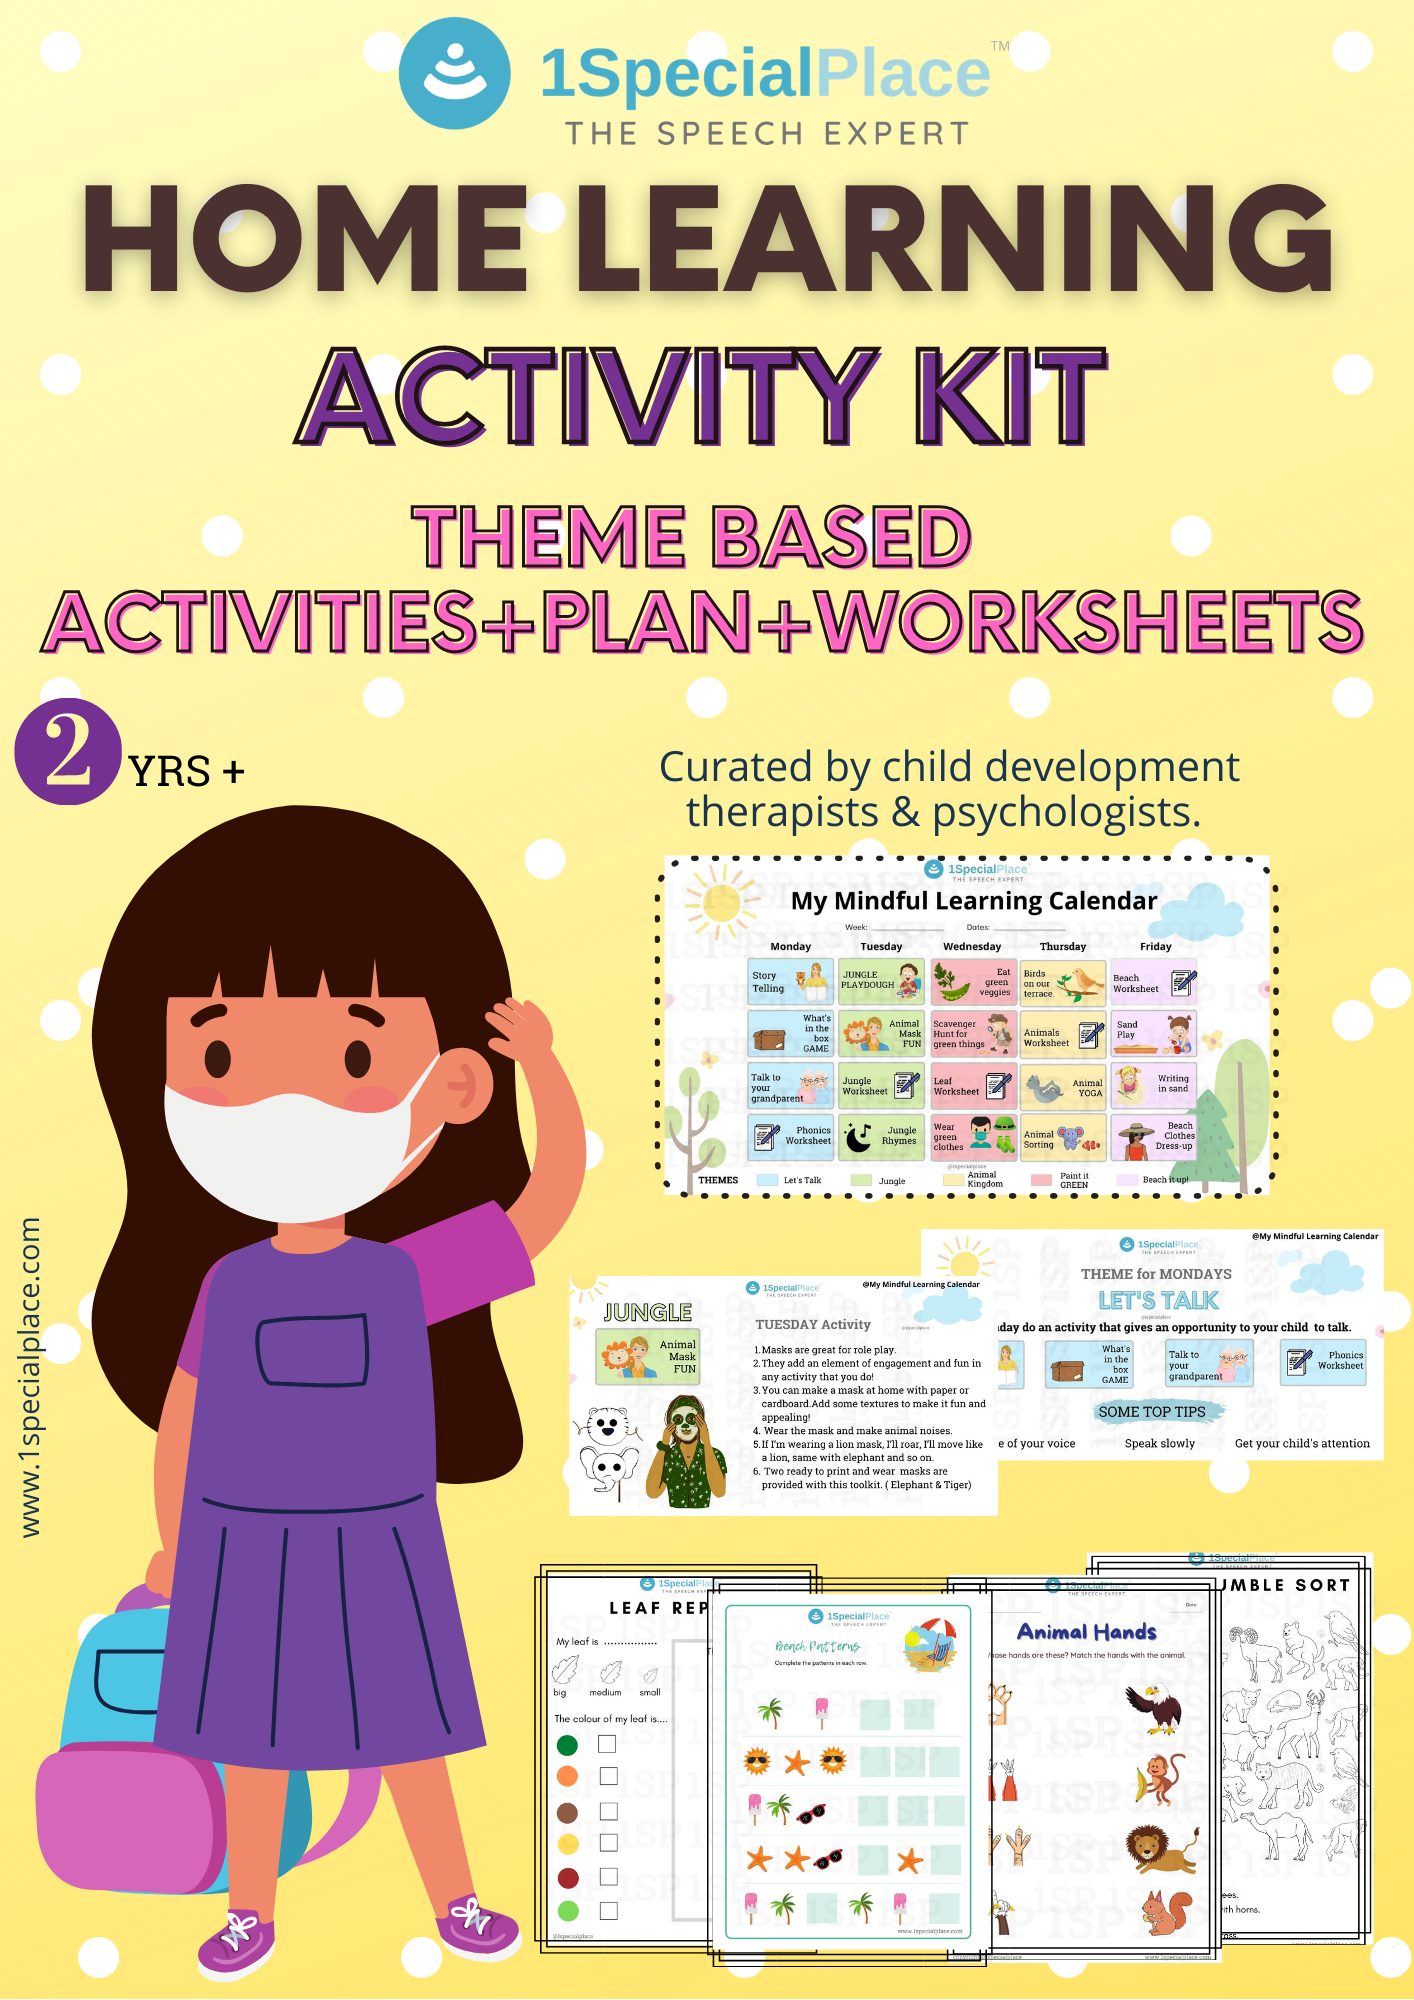 Home Learning - Activity Kit for children